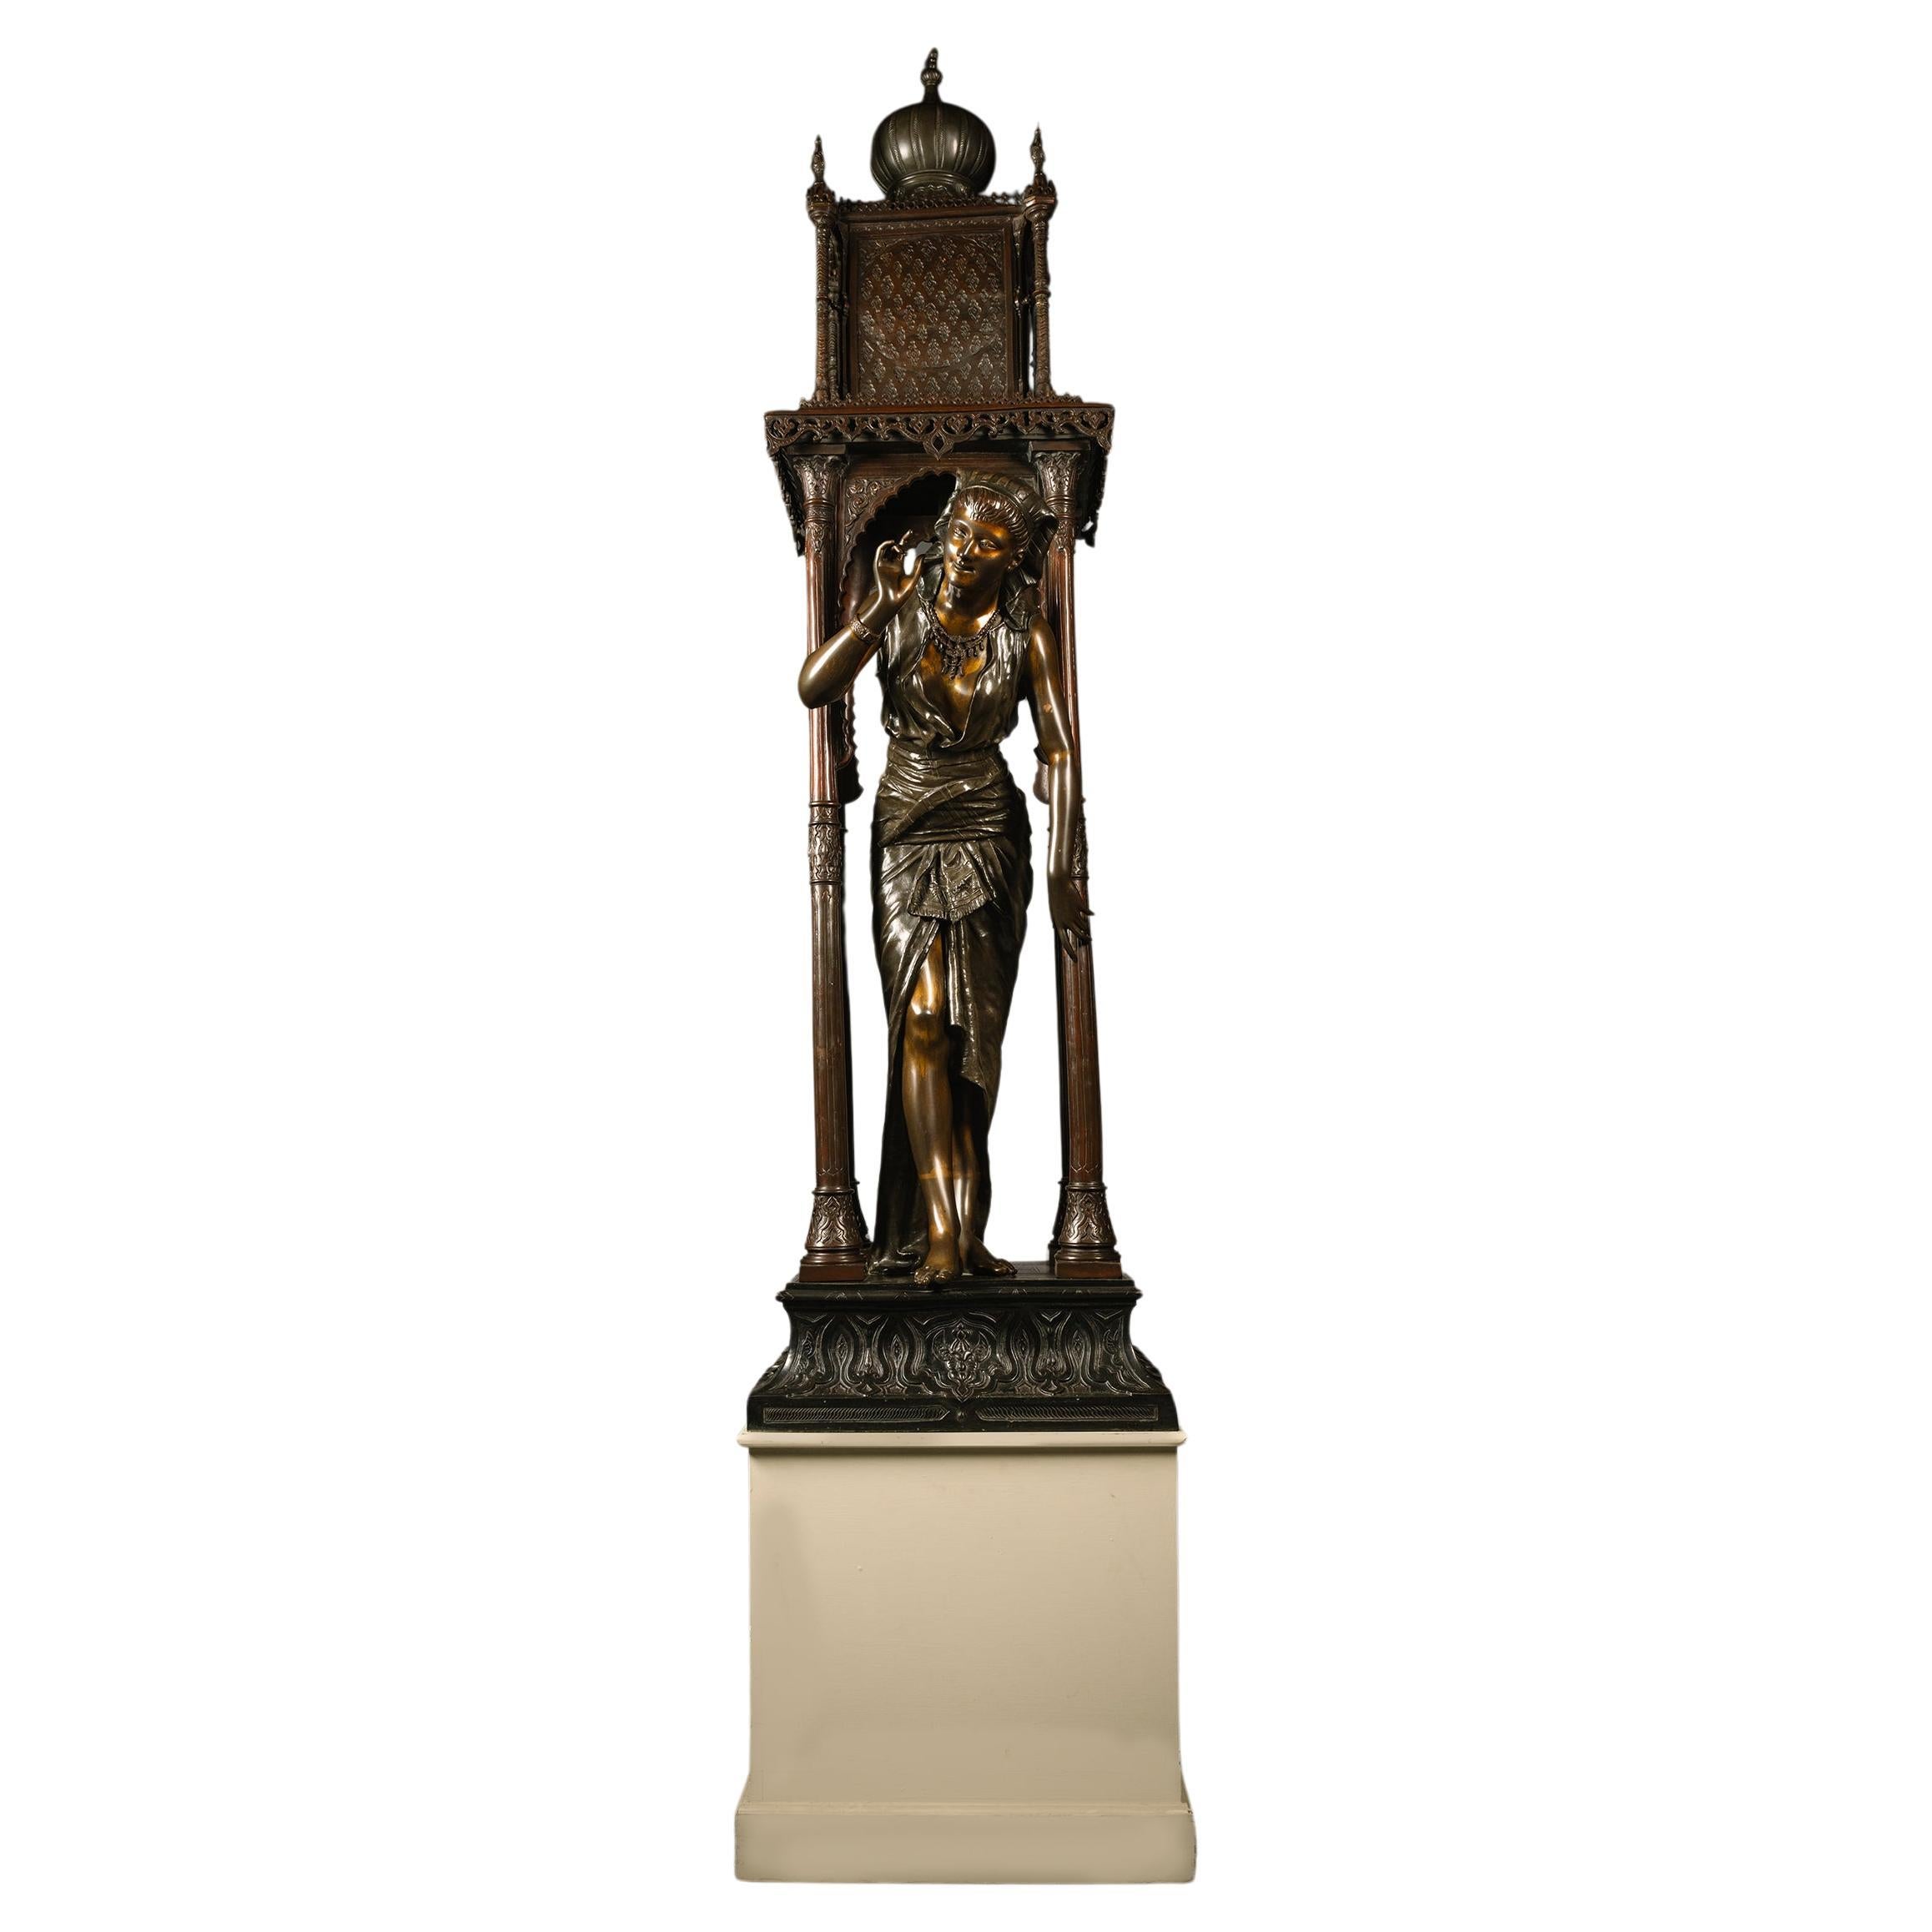 Estatua orientalista de bronce de tamaño natural, atribuida a Louis Hottot